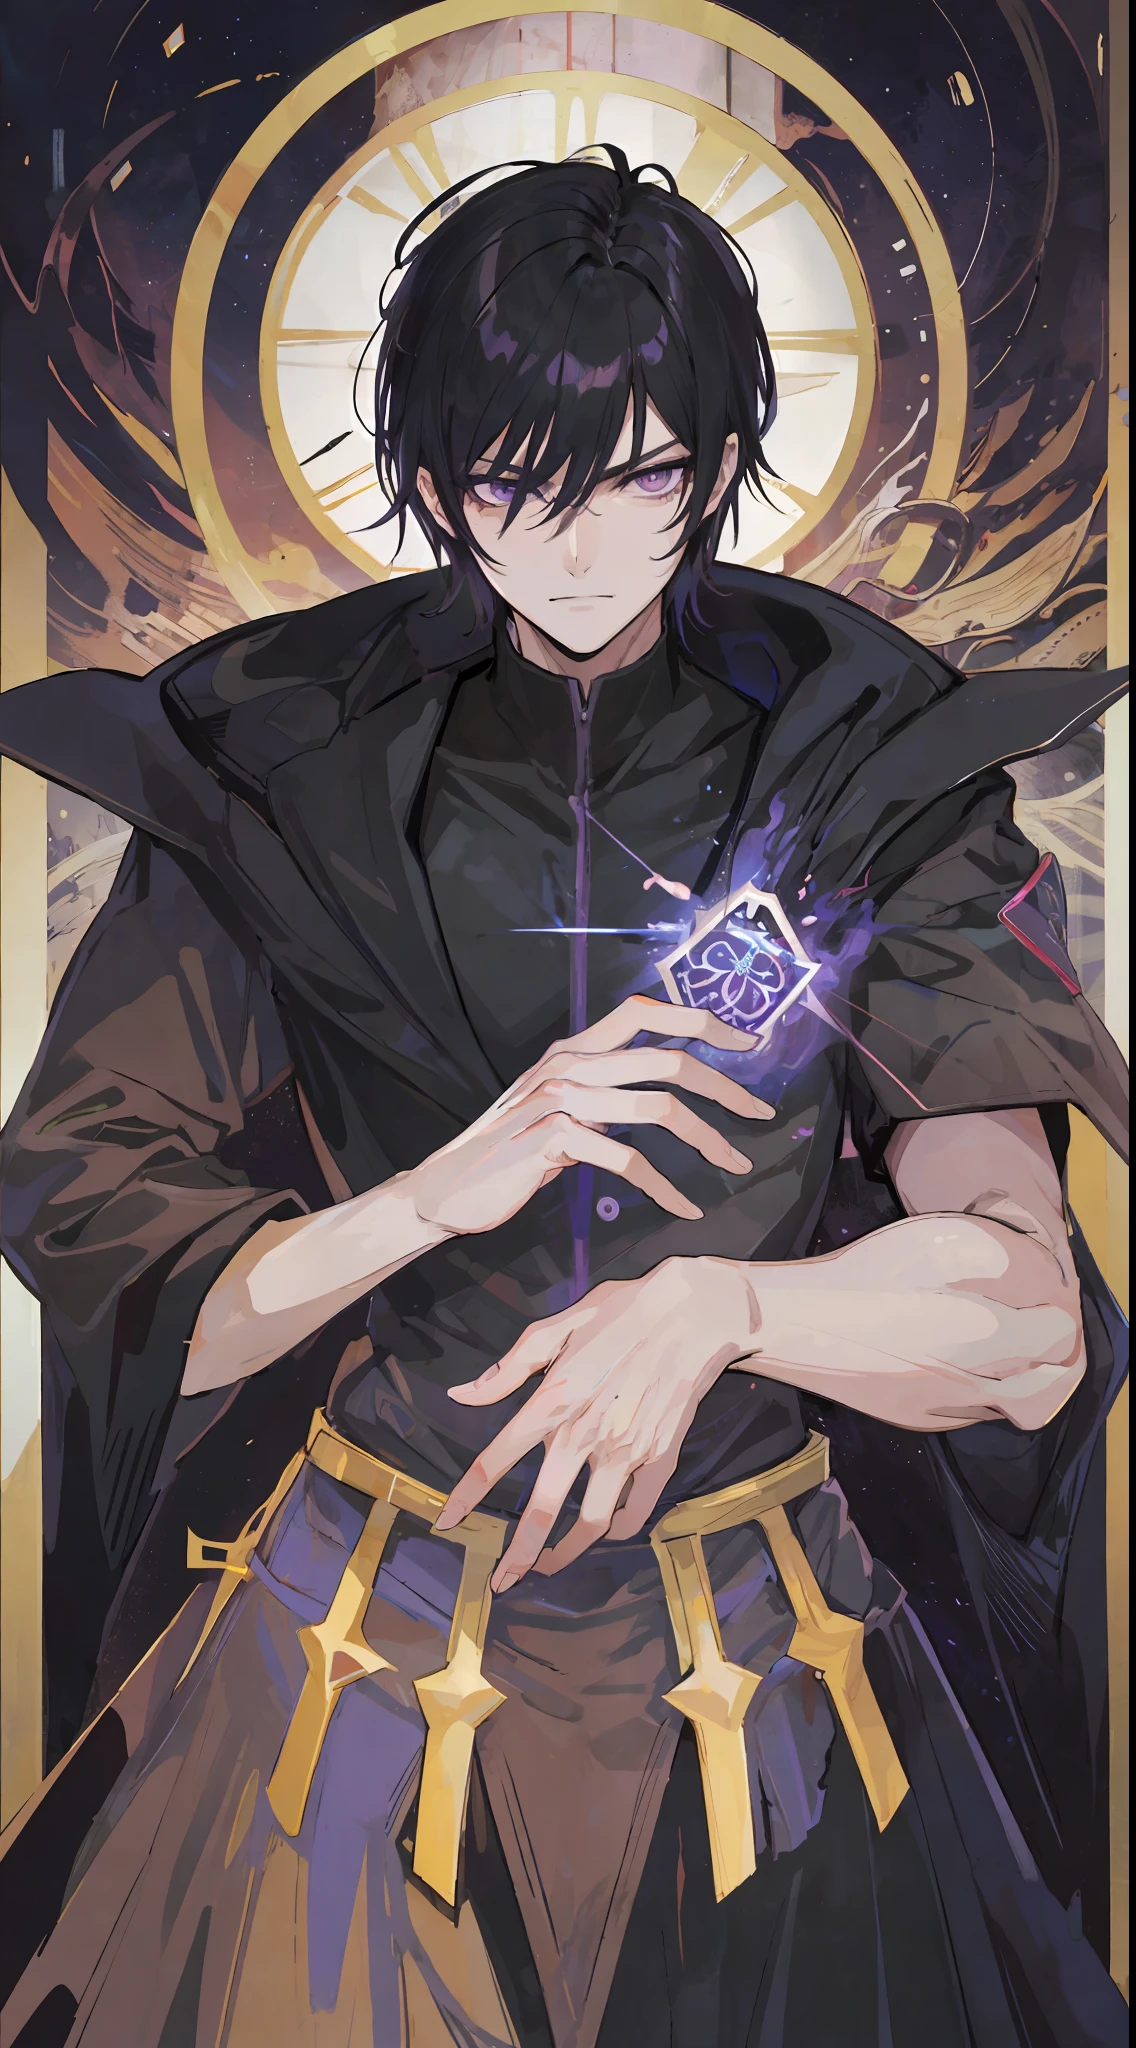 1 homem, Cabelo preto curto, olhos preto-púrpura ardentes, usa um terno preto, ele é um lorde demônio, faça como no estilo anime de tarô, mas sem moldura